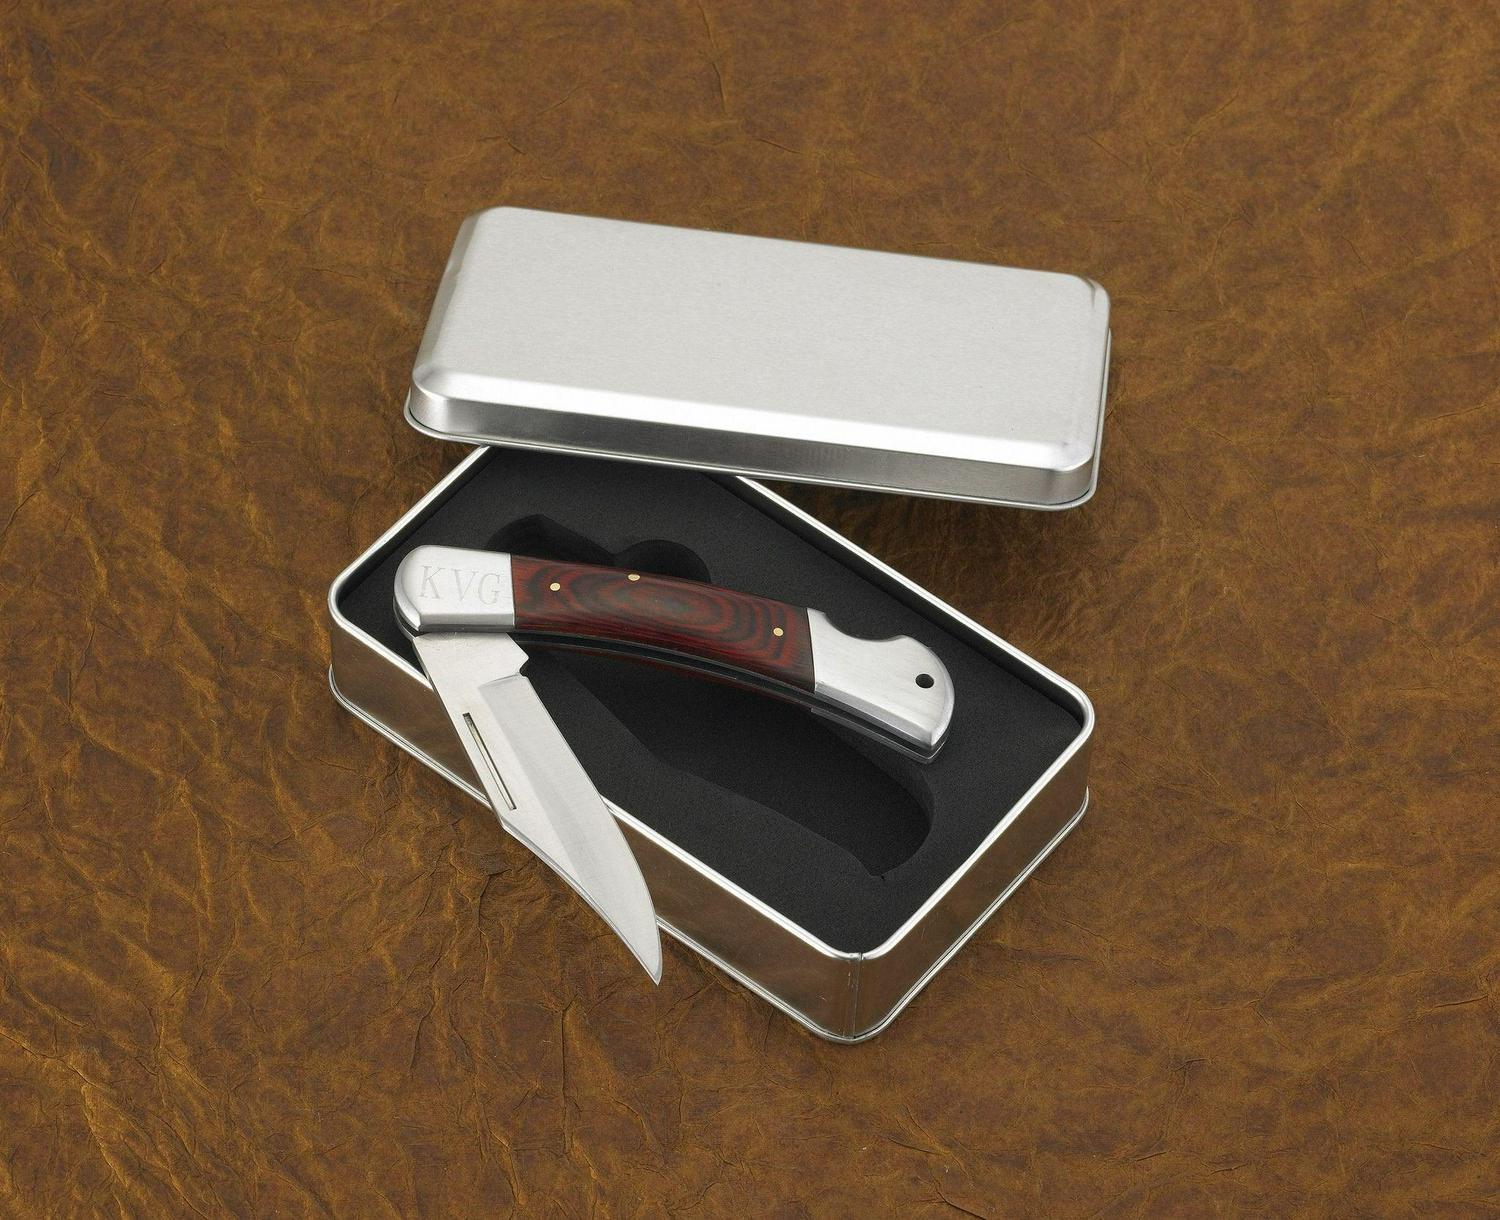 Personalized Yukon Wood Handle Pocket Knife